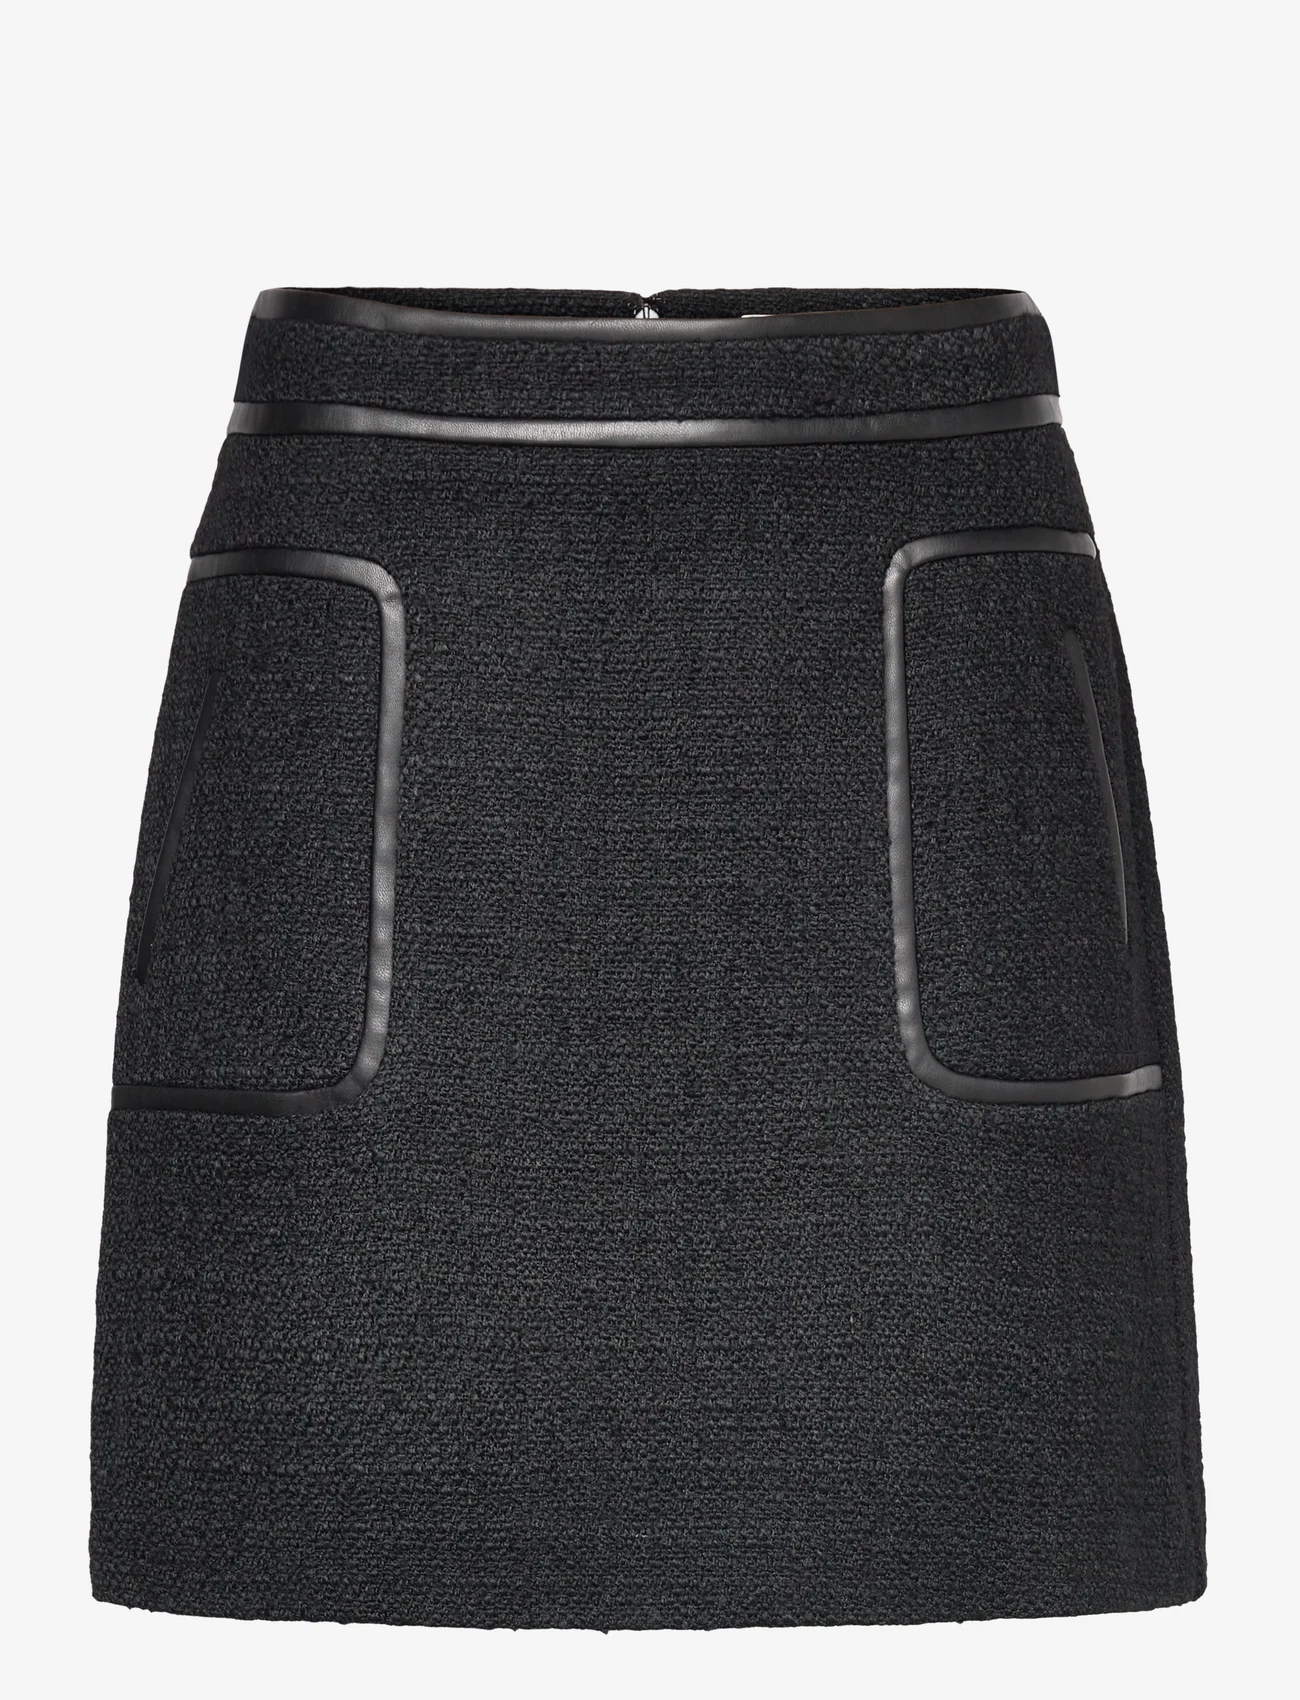 Malina - Paige boucle wool blend mini skirt - kurze röcke - black - 0